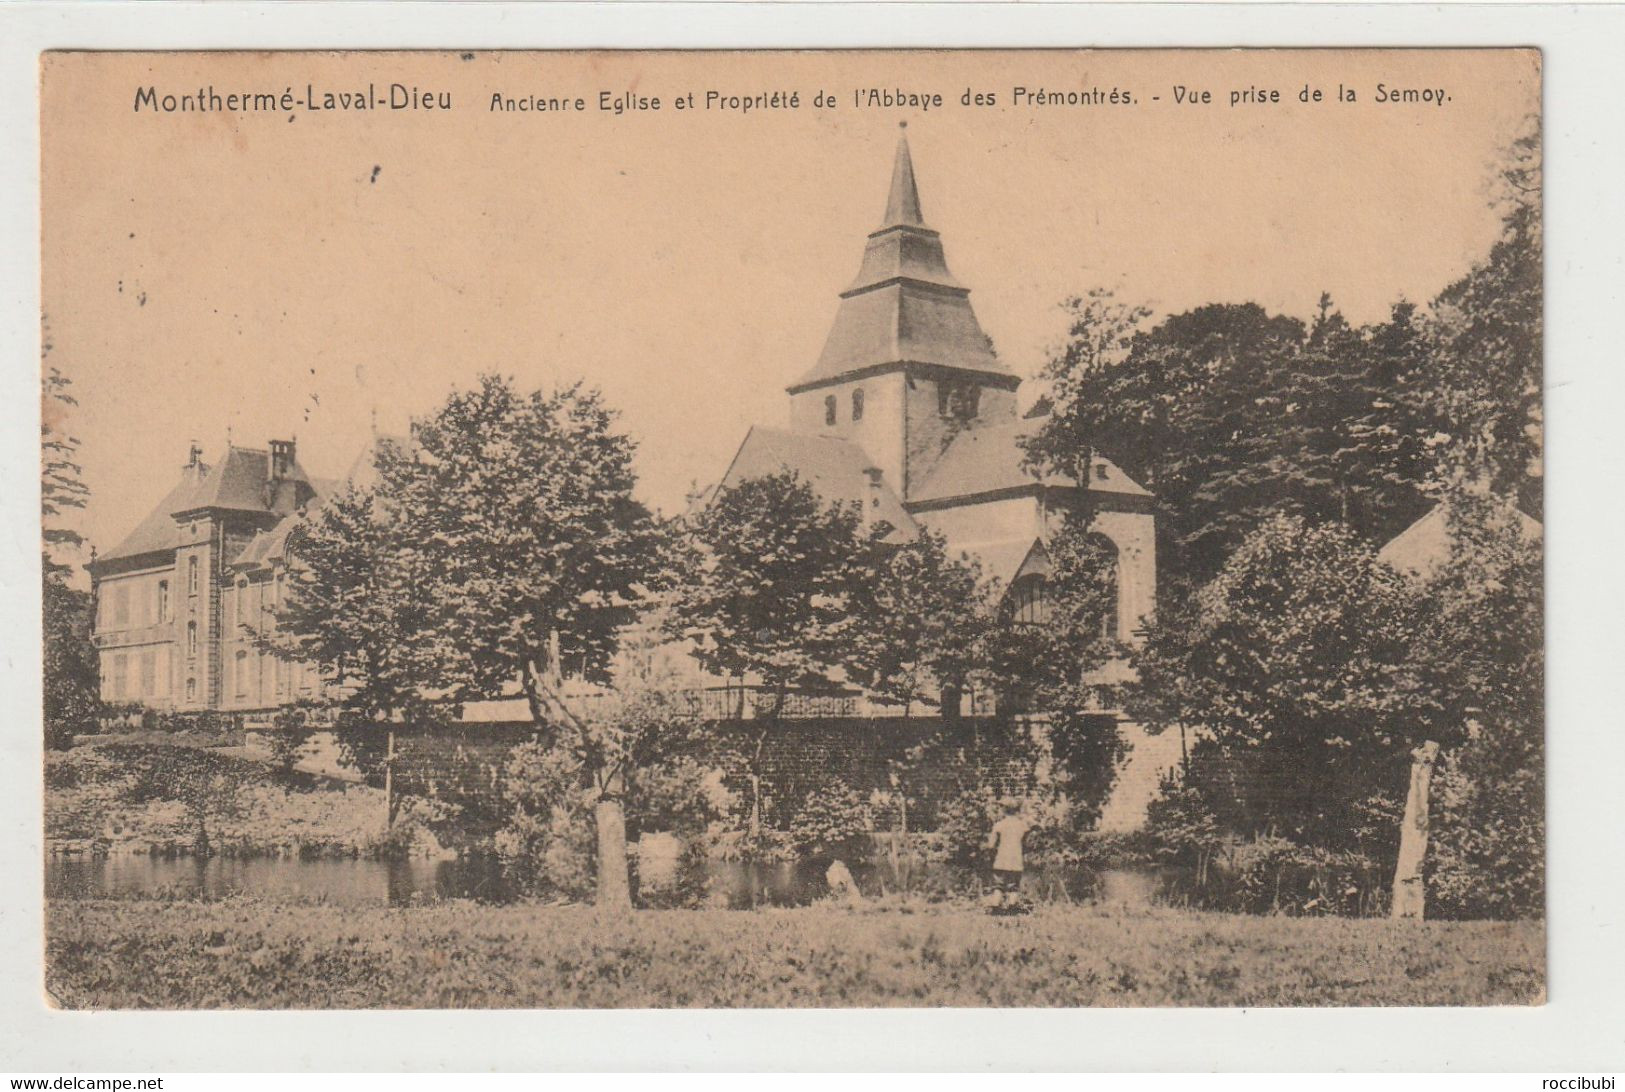 Montherme-Laval-Dieu, Frankreich - Montherme